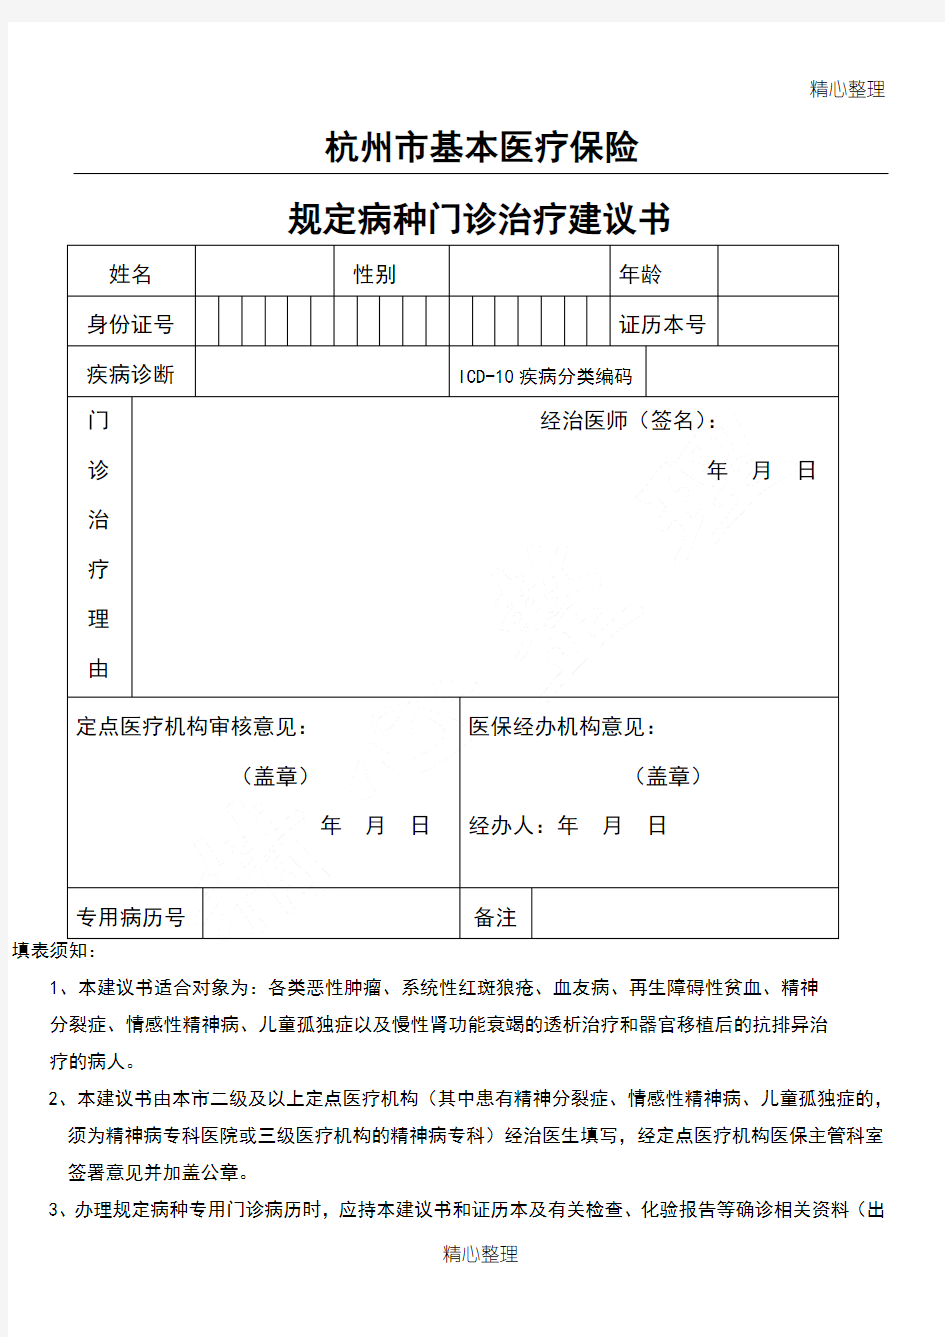 杭州市基本医疗保险规定病种门诊建议方案